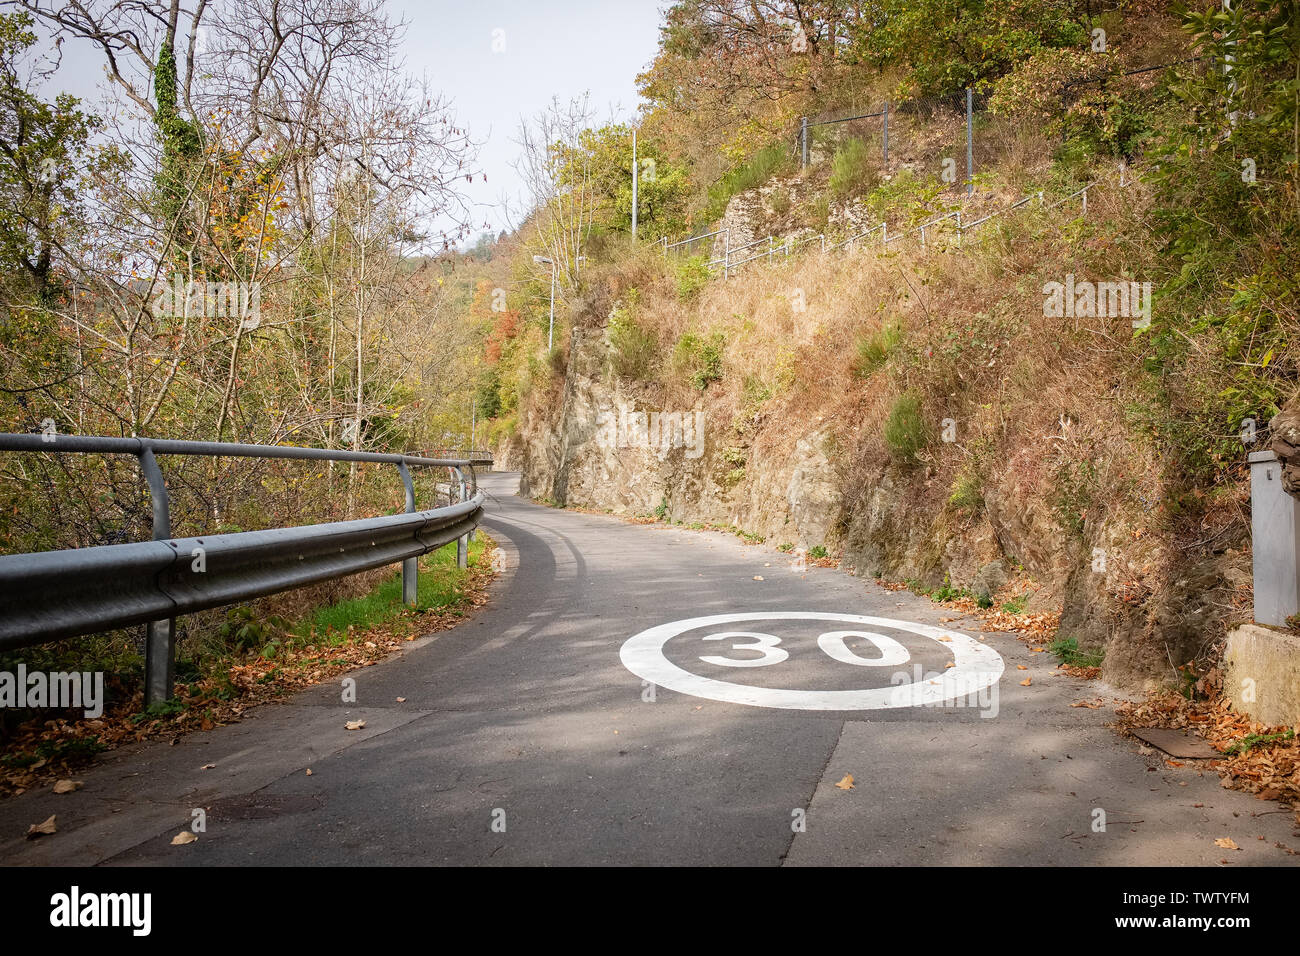 Señal de límite de velocidad marcado en una carretera rural. Clerveux, Luxemburgo Foto de stock